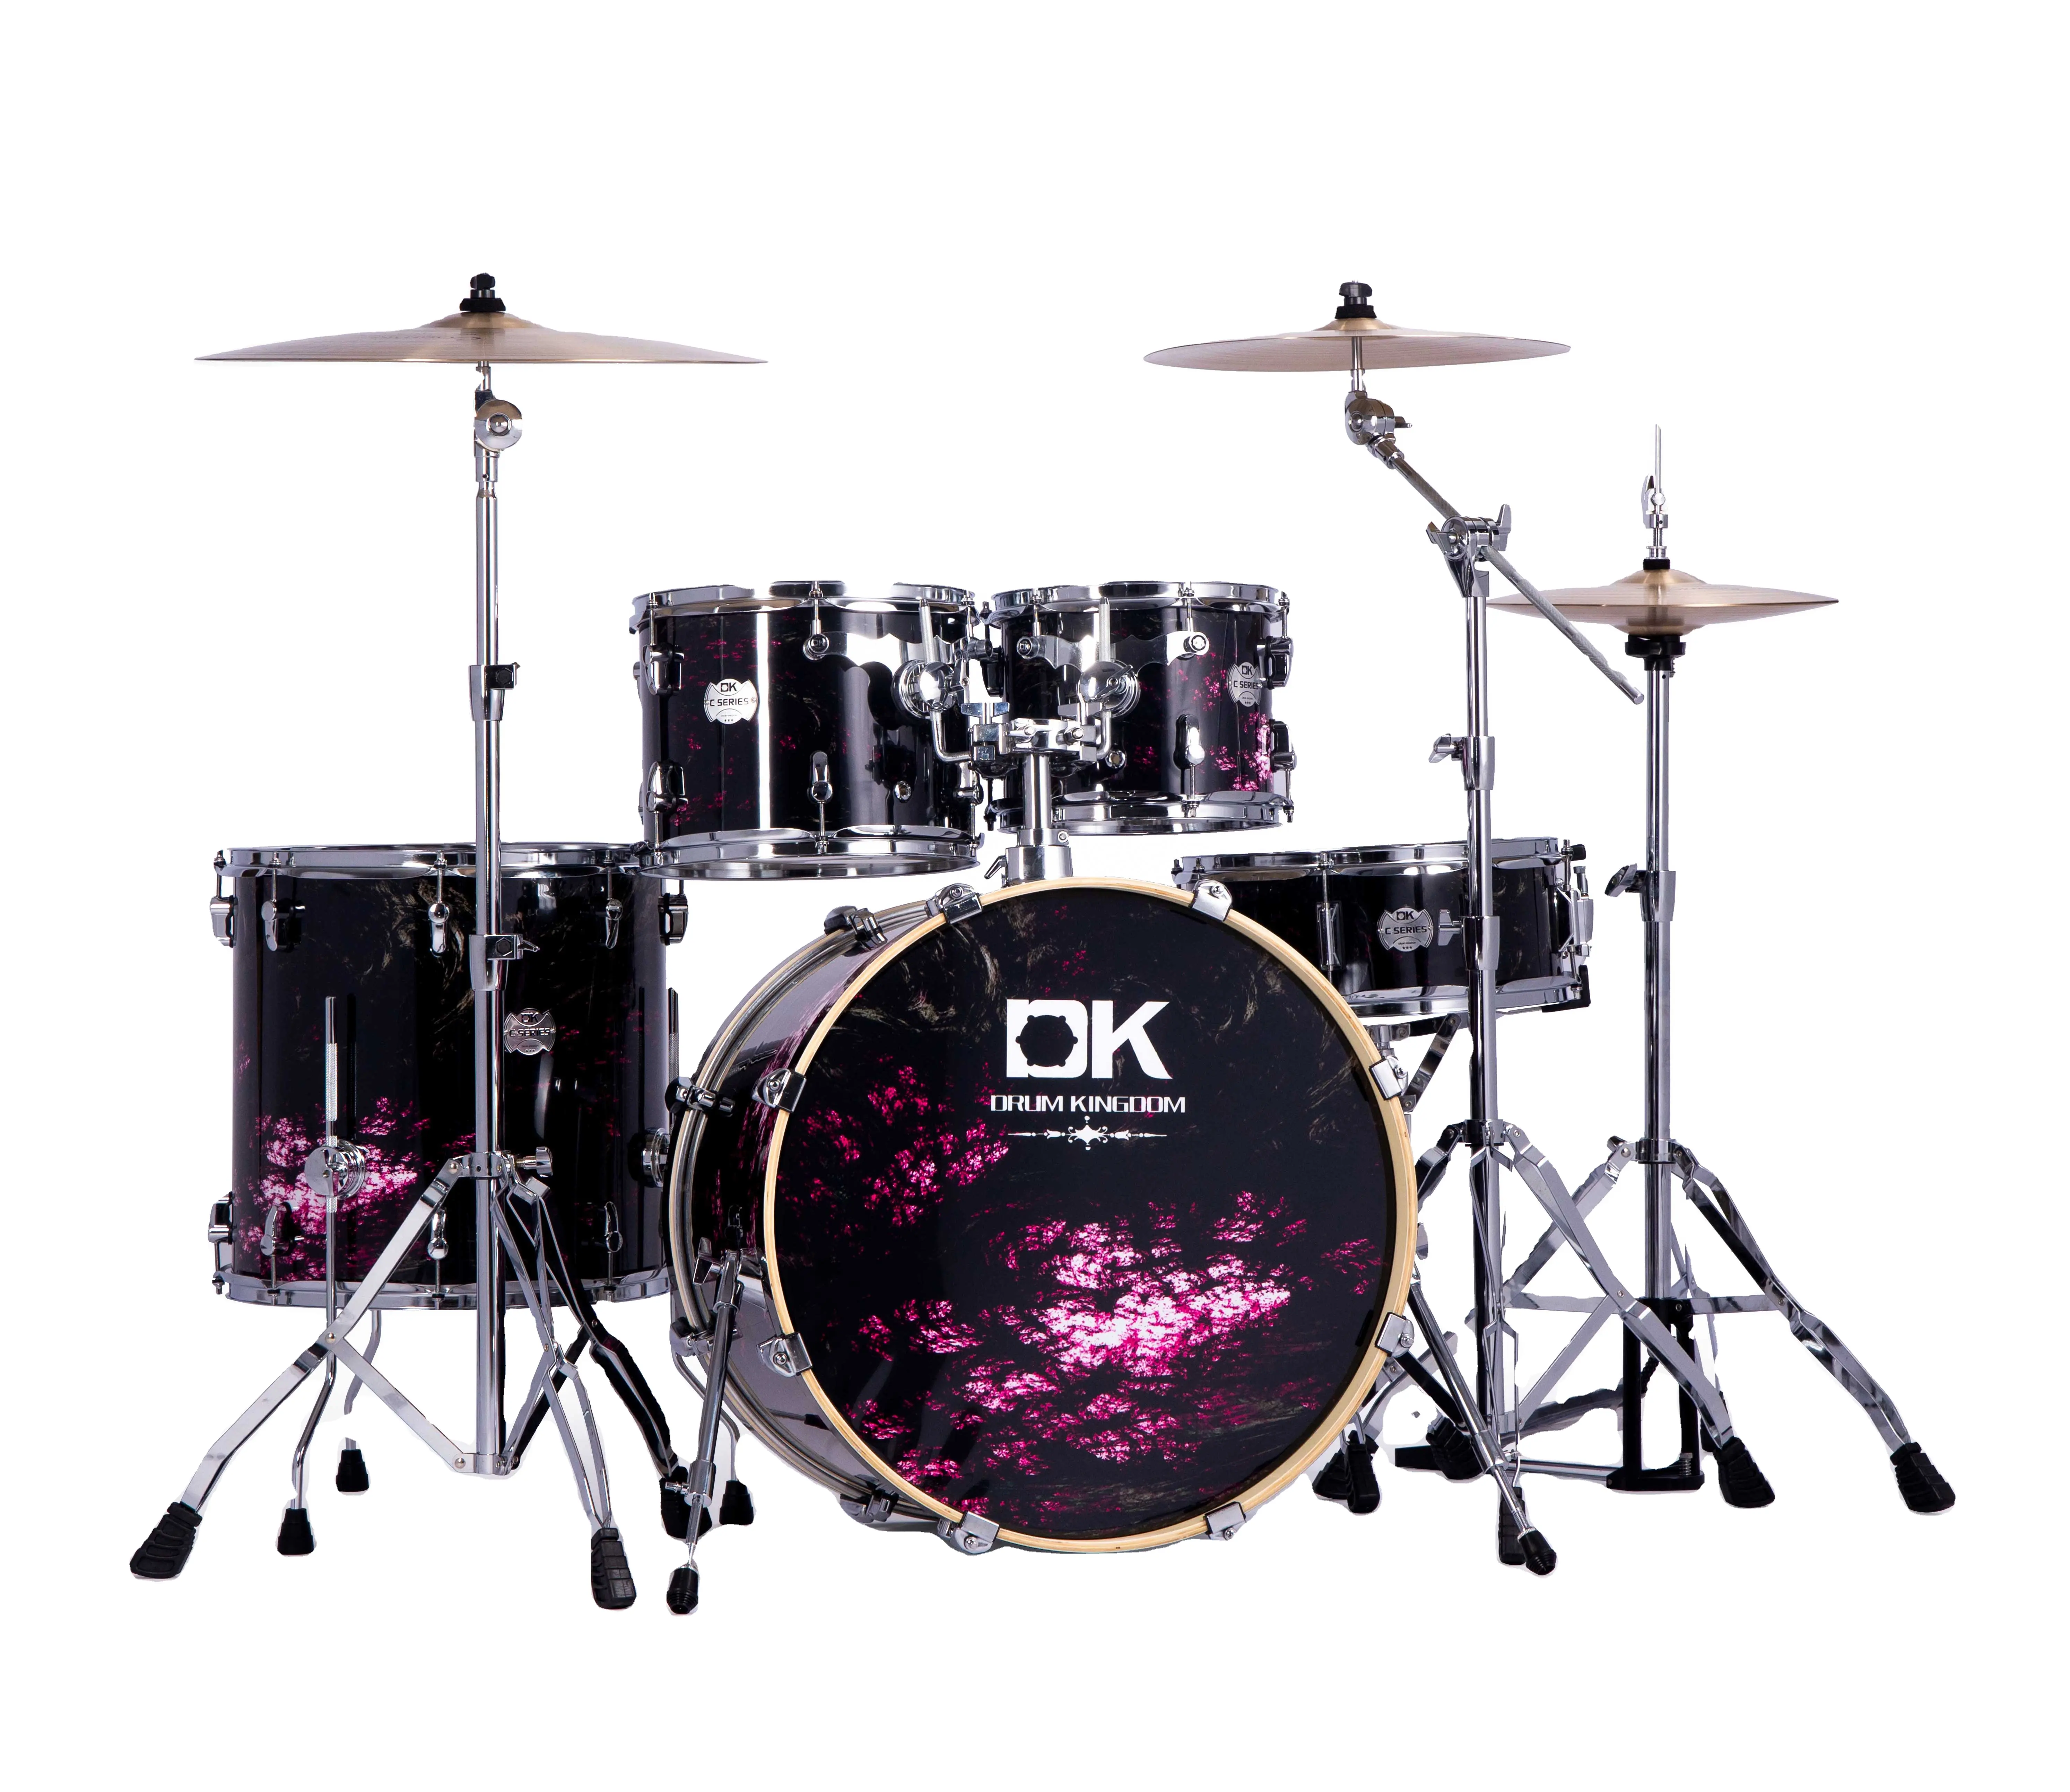 Strumenti a percussione C7S modello tamburo DK acustica scocca in legno di pioppo drum kit